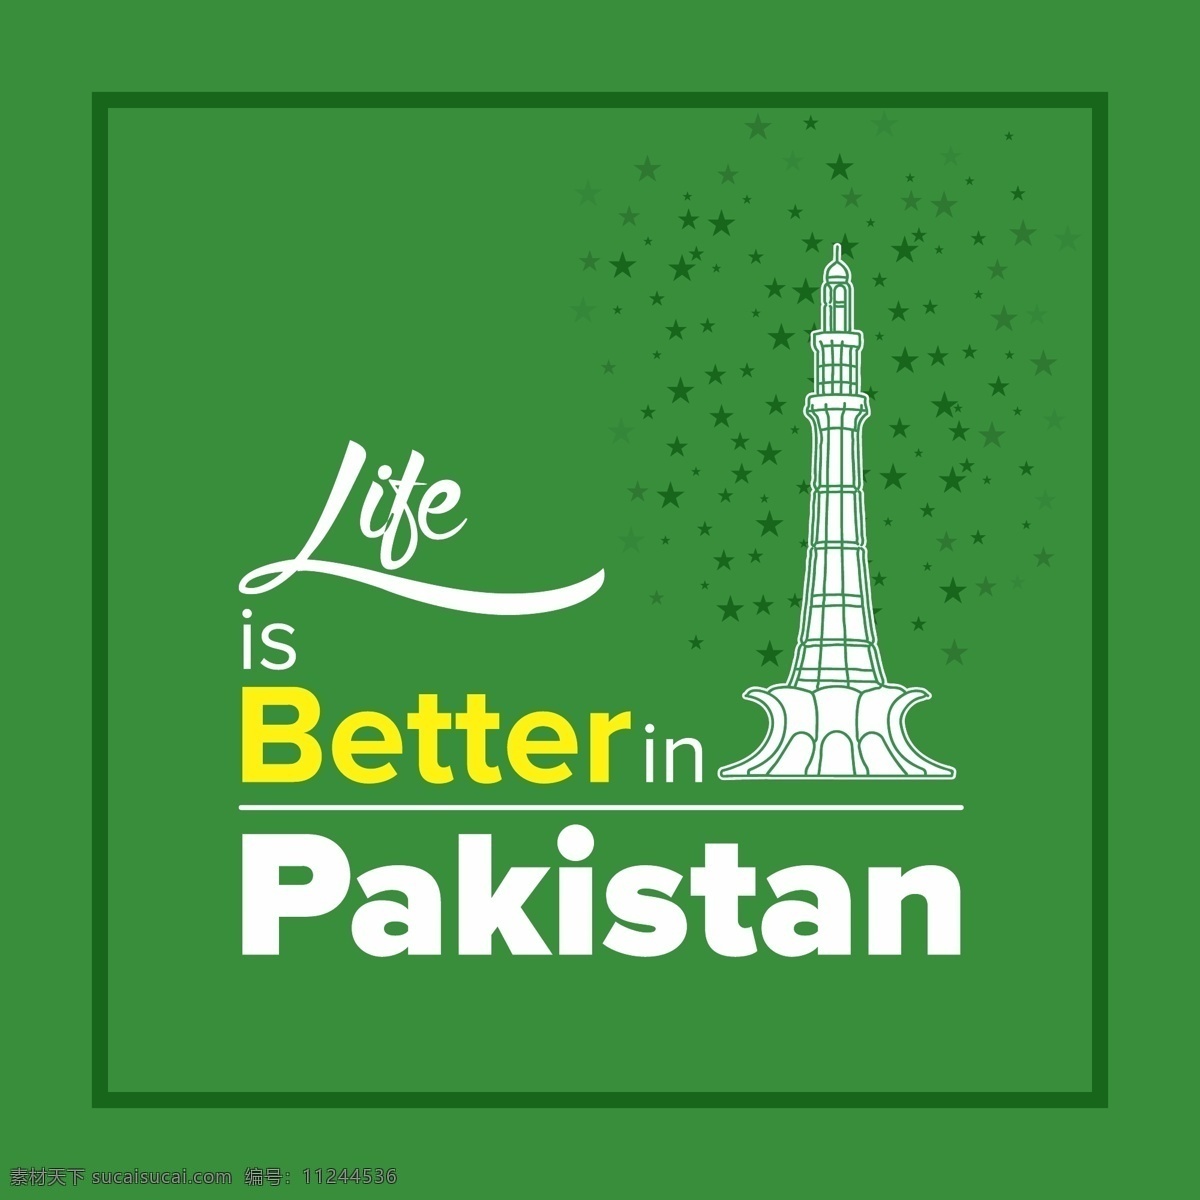 巴基斯坦 天 绿色 背景 鼓舞人心 报价 快乐 庆祝 节日 引用 信息 国家 身份 自由 文化 亚洲 日 革命 政府